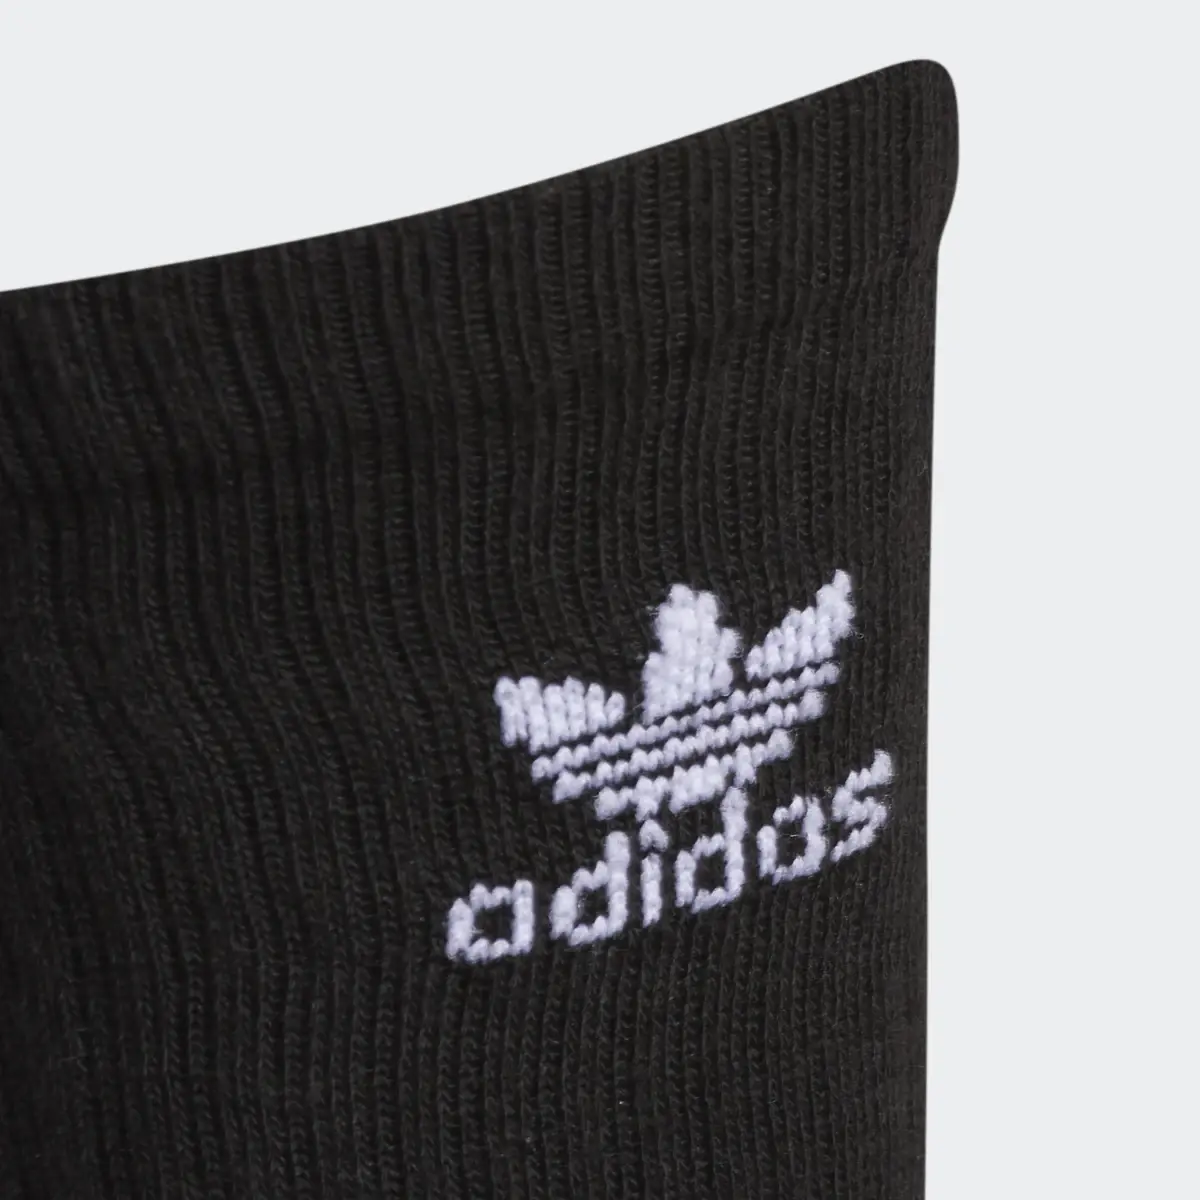 Adidas Trefoil Crew Socks 6 Pairs. 3